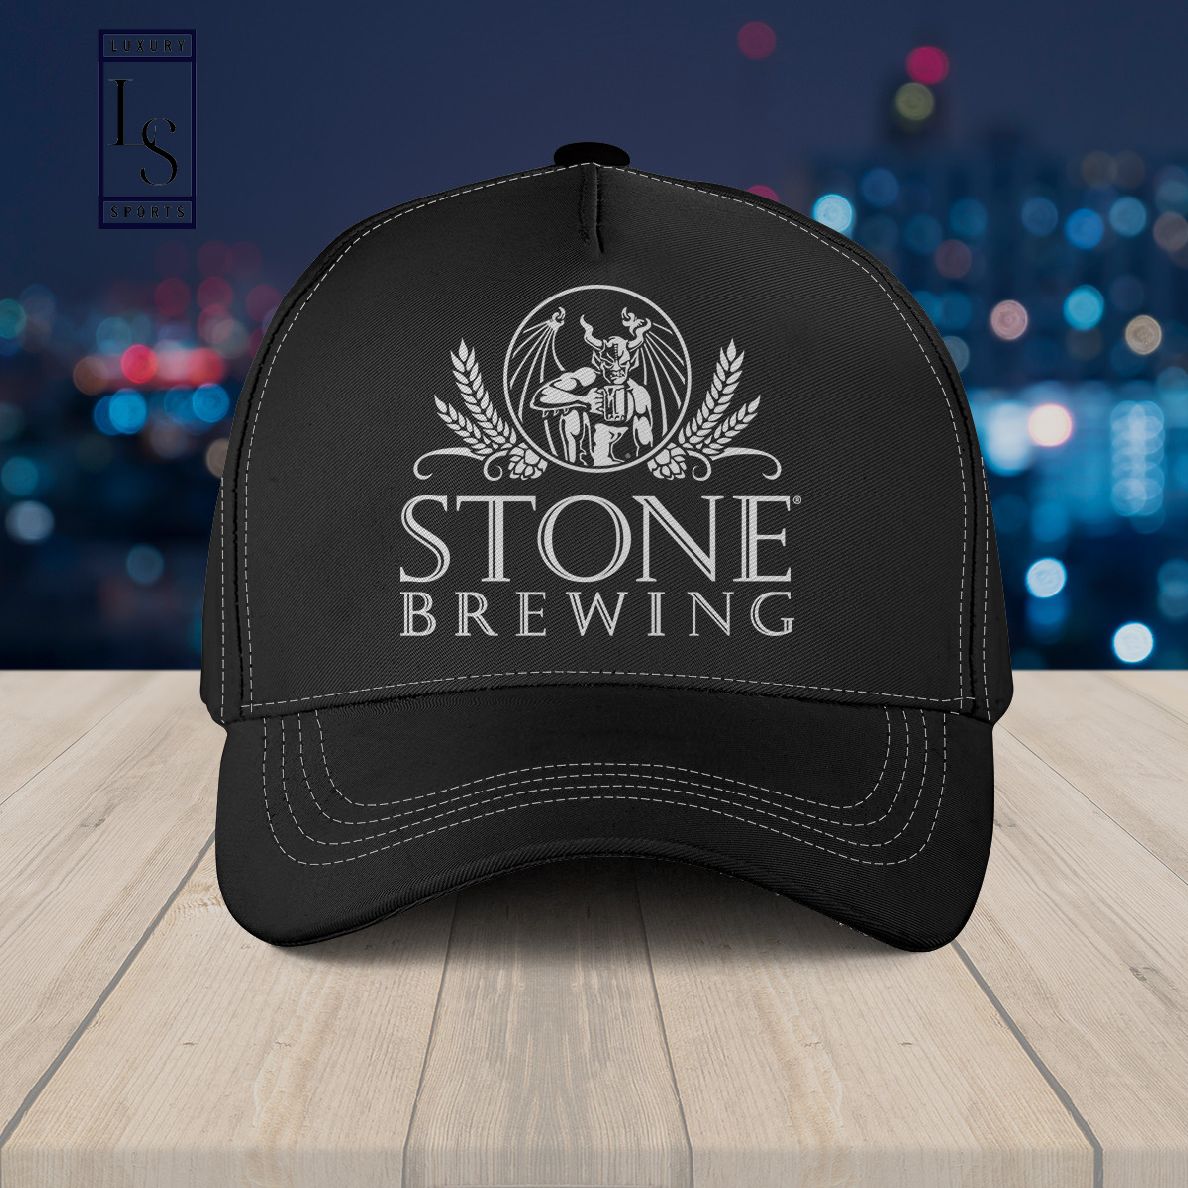 Stone Brewing Baseball Cap